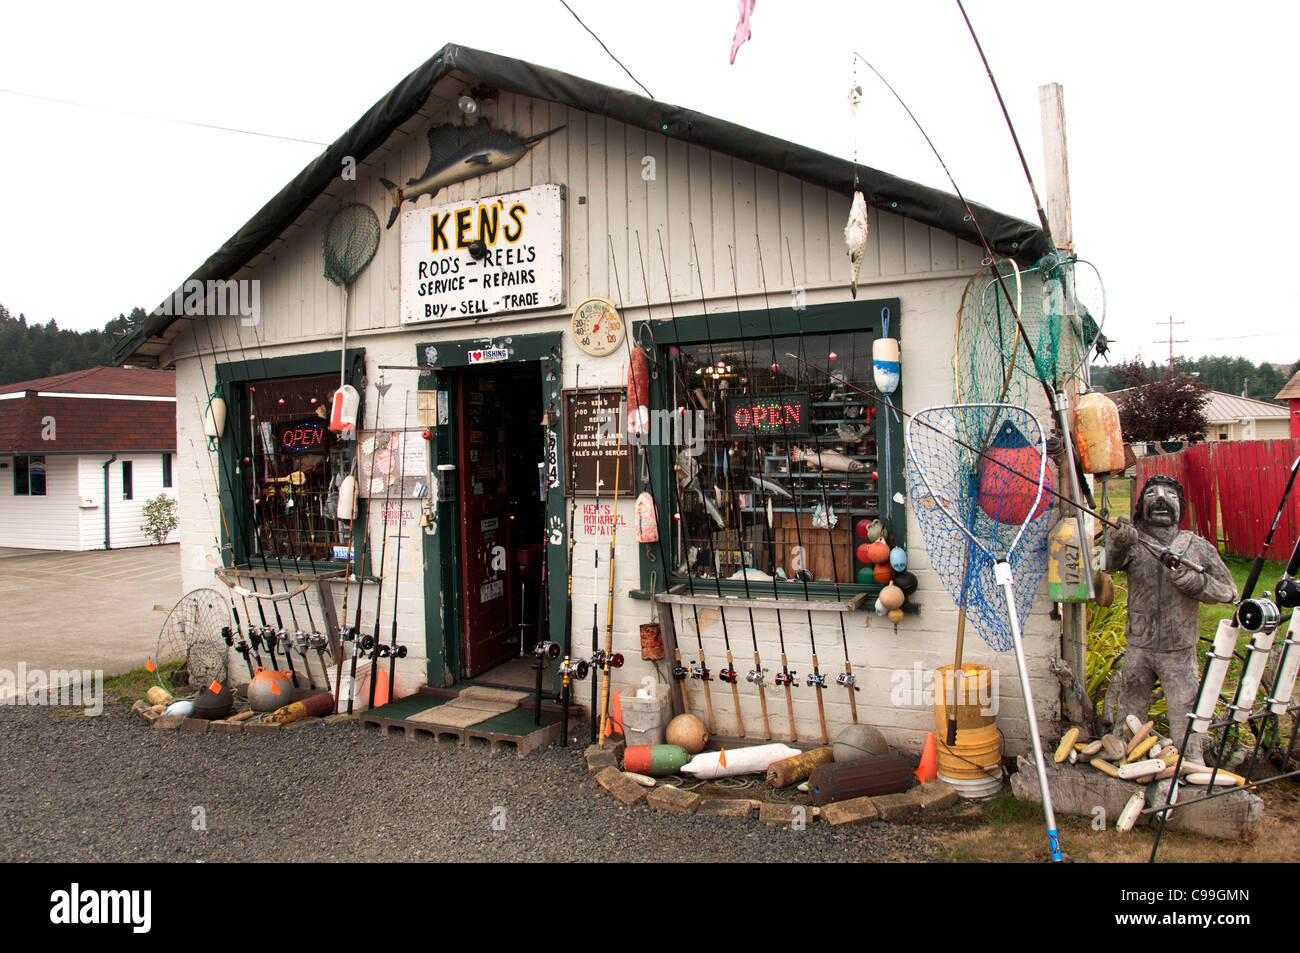 Ken's Rod's Reel,s Fish and Tackle shop Reedsport Oregon United